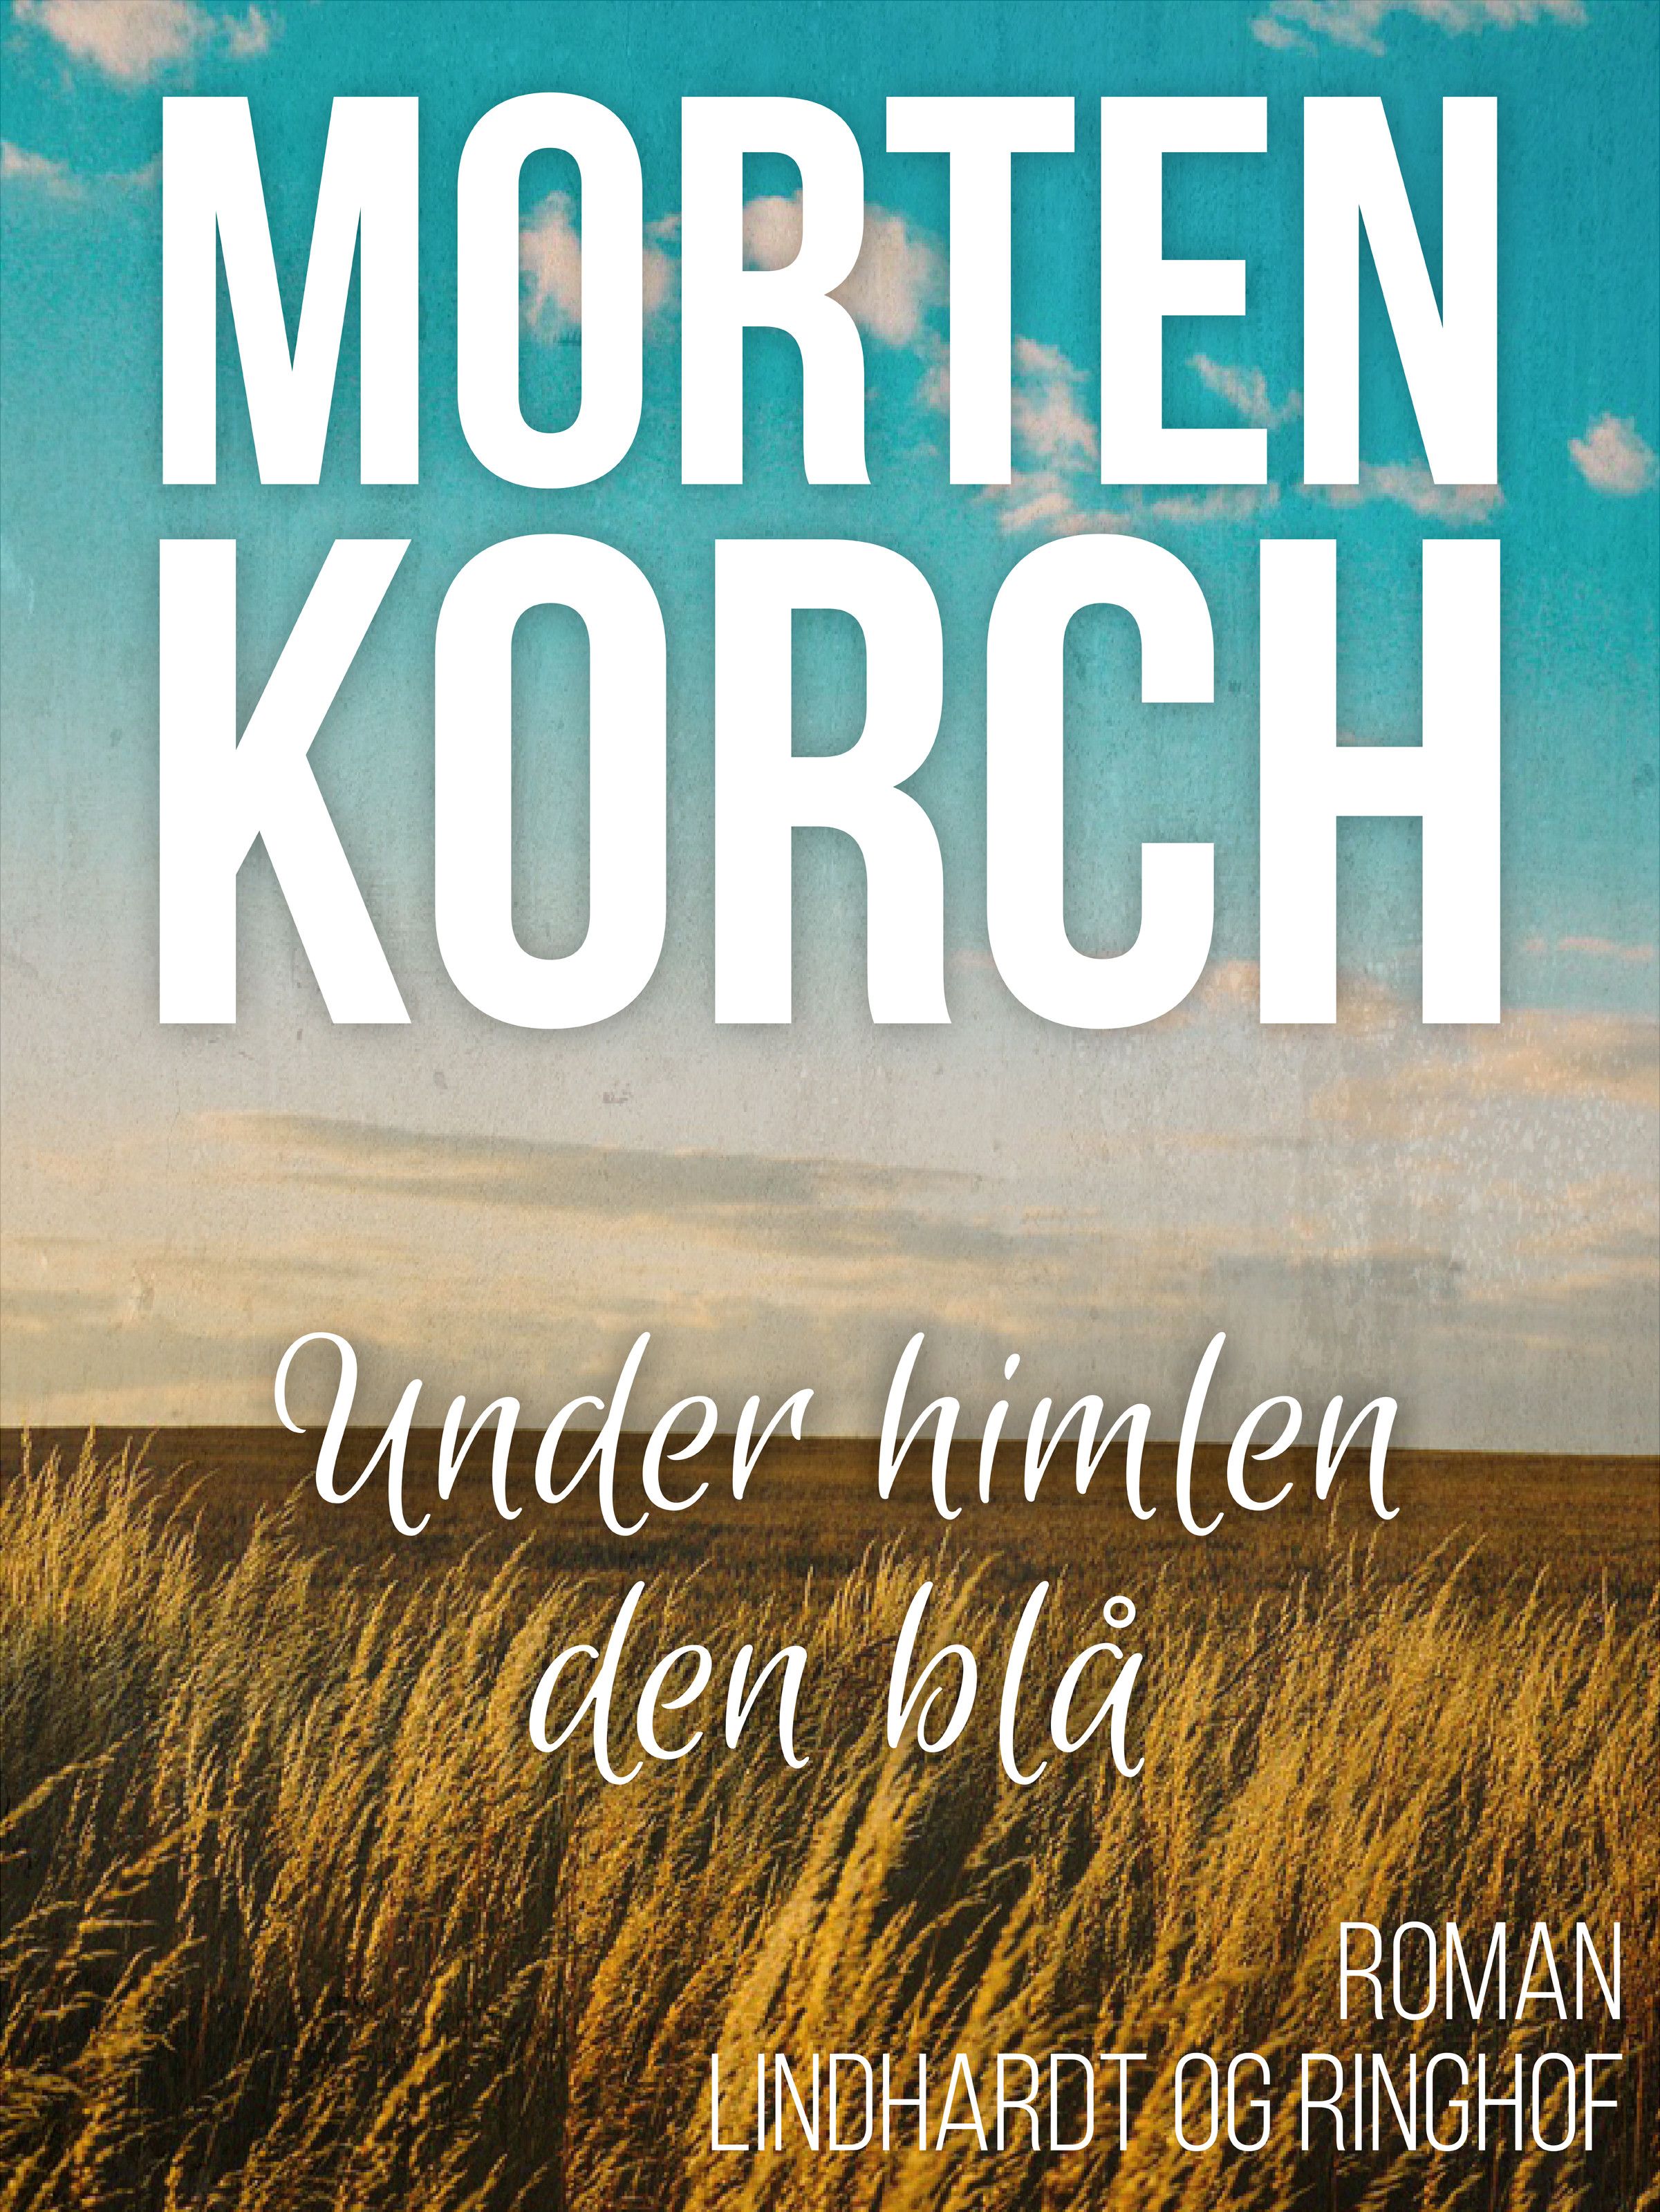 Under himlen den blå, audiobook by Morten Korch